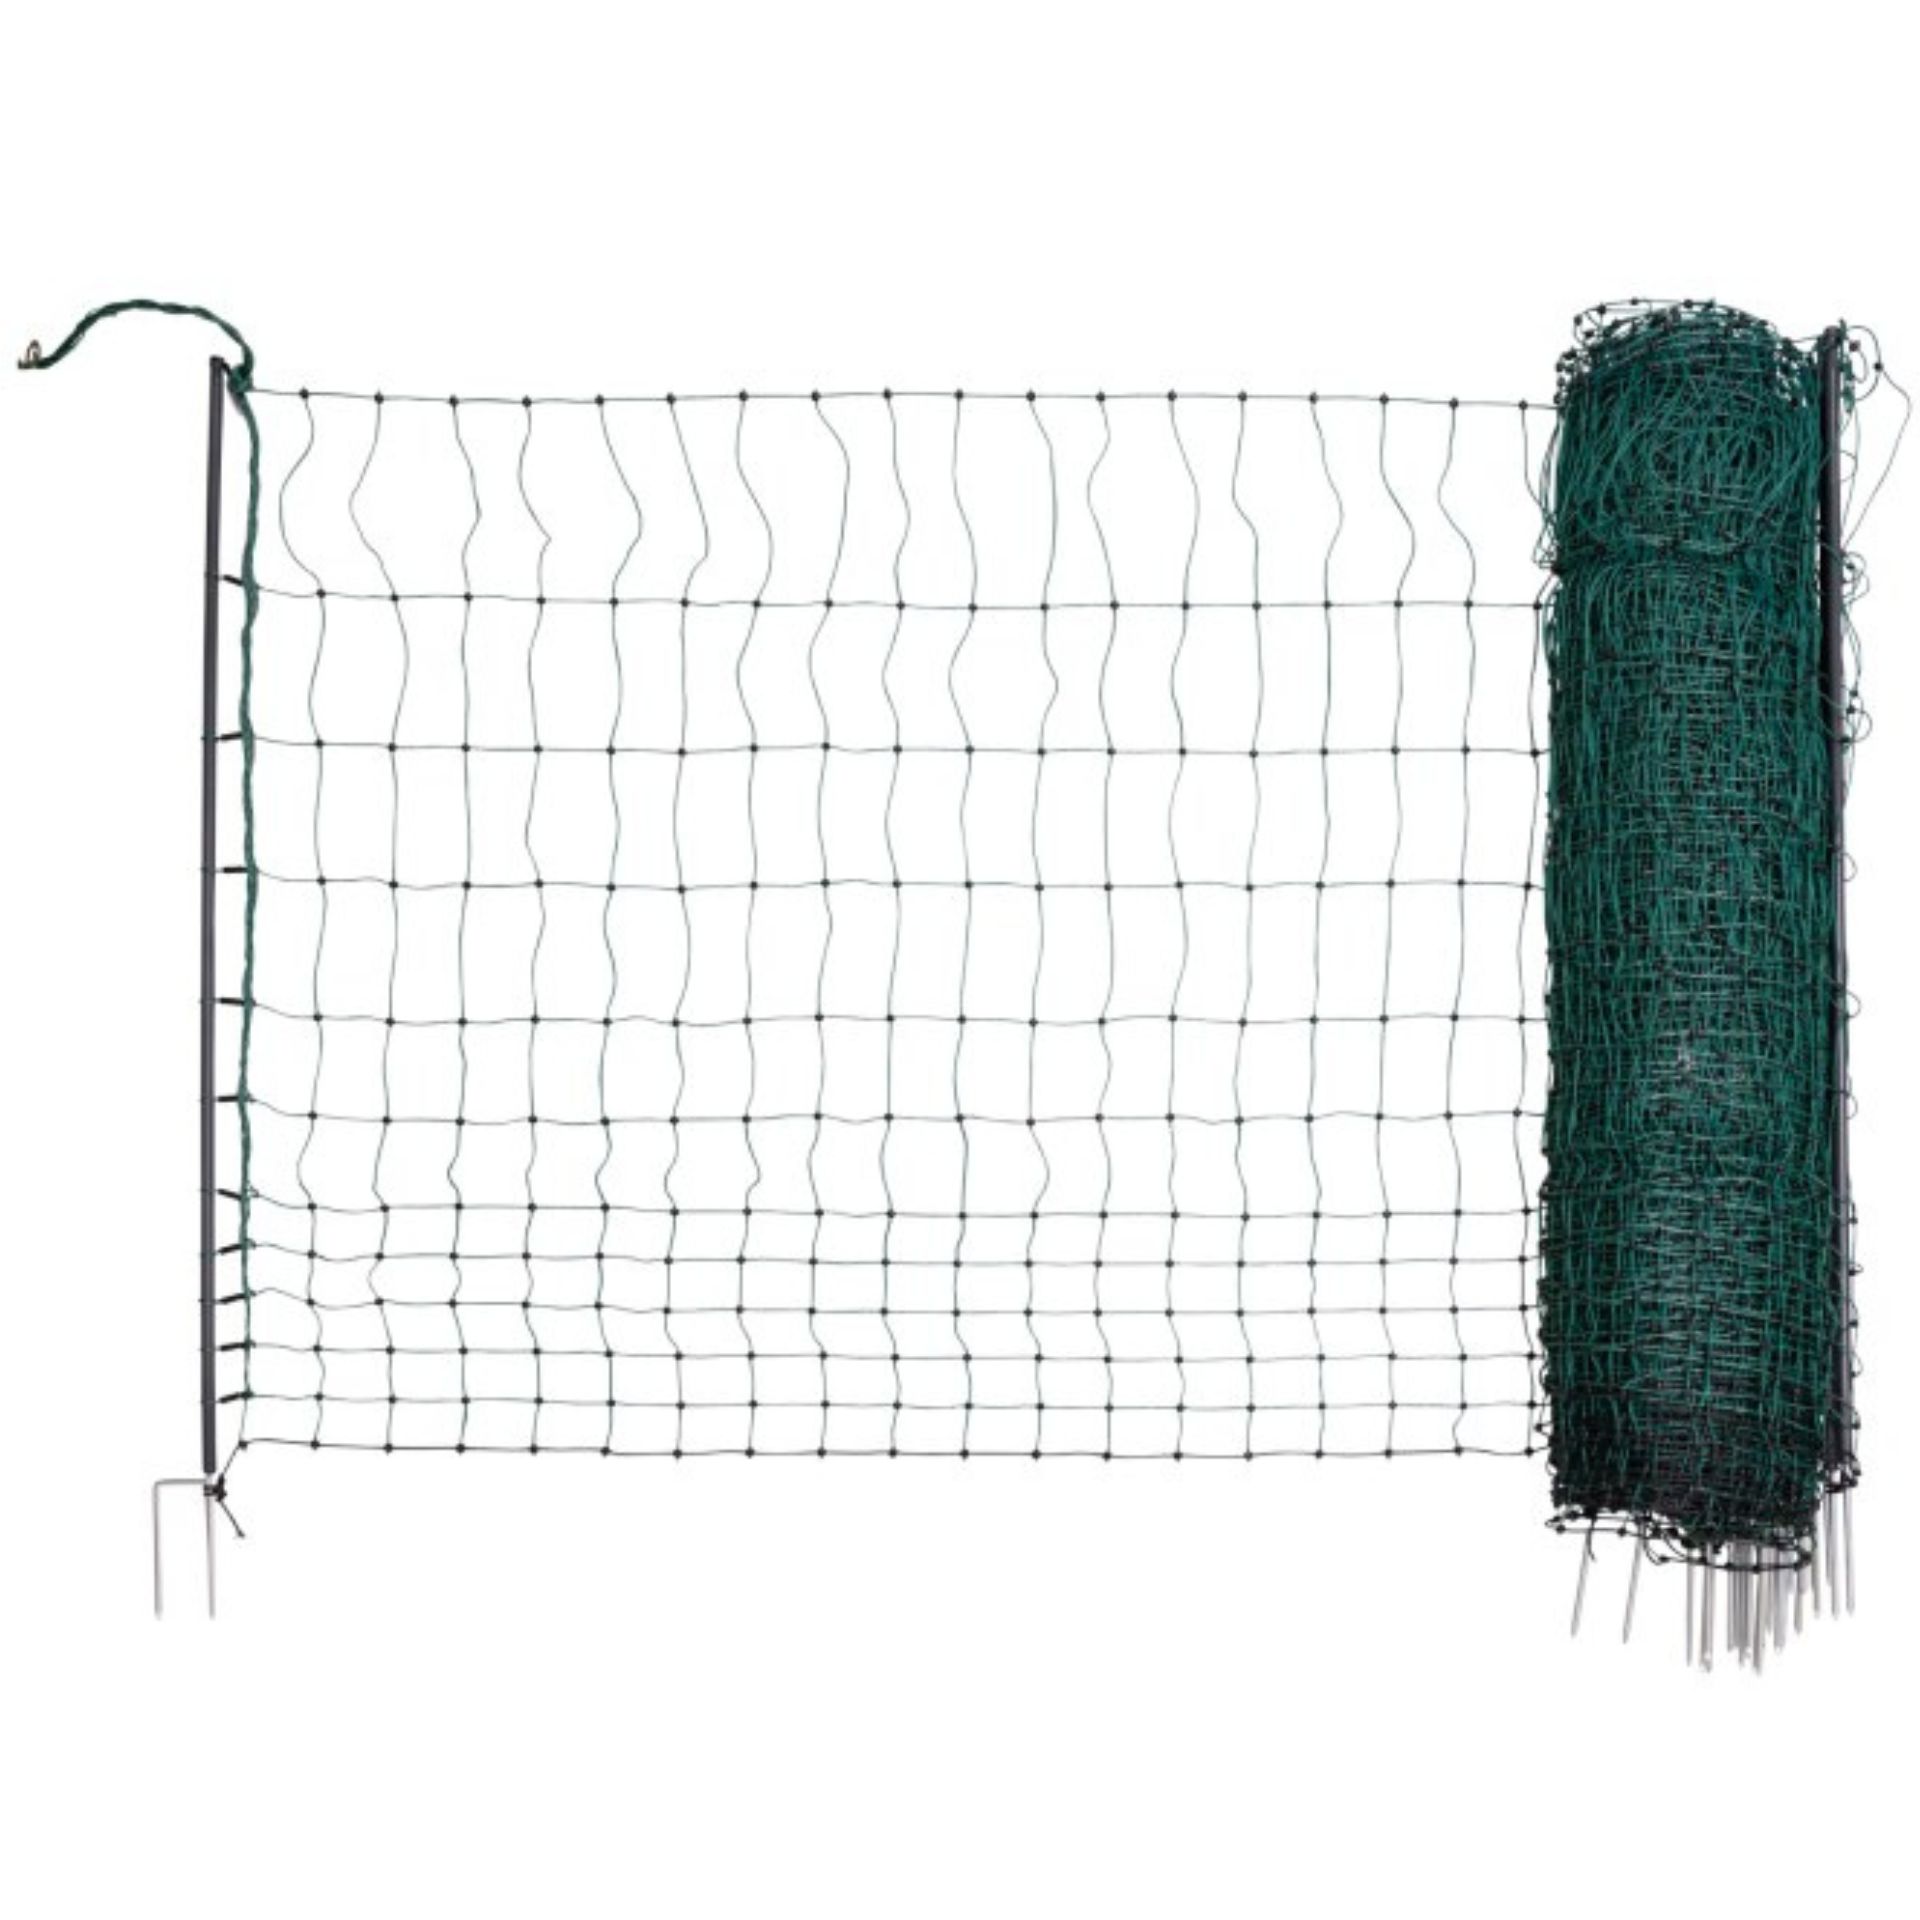 Poultry Net. Prem., green,50 m 122 cm, dbl prong, electrif.